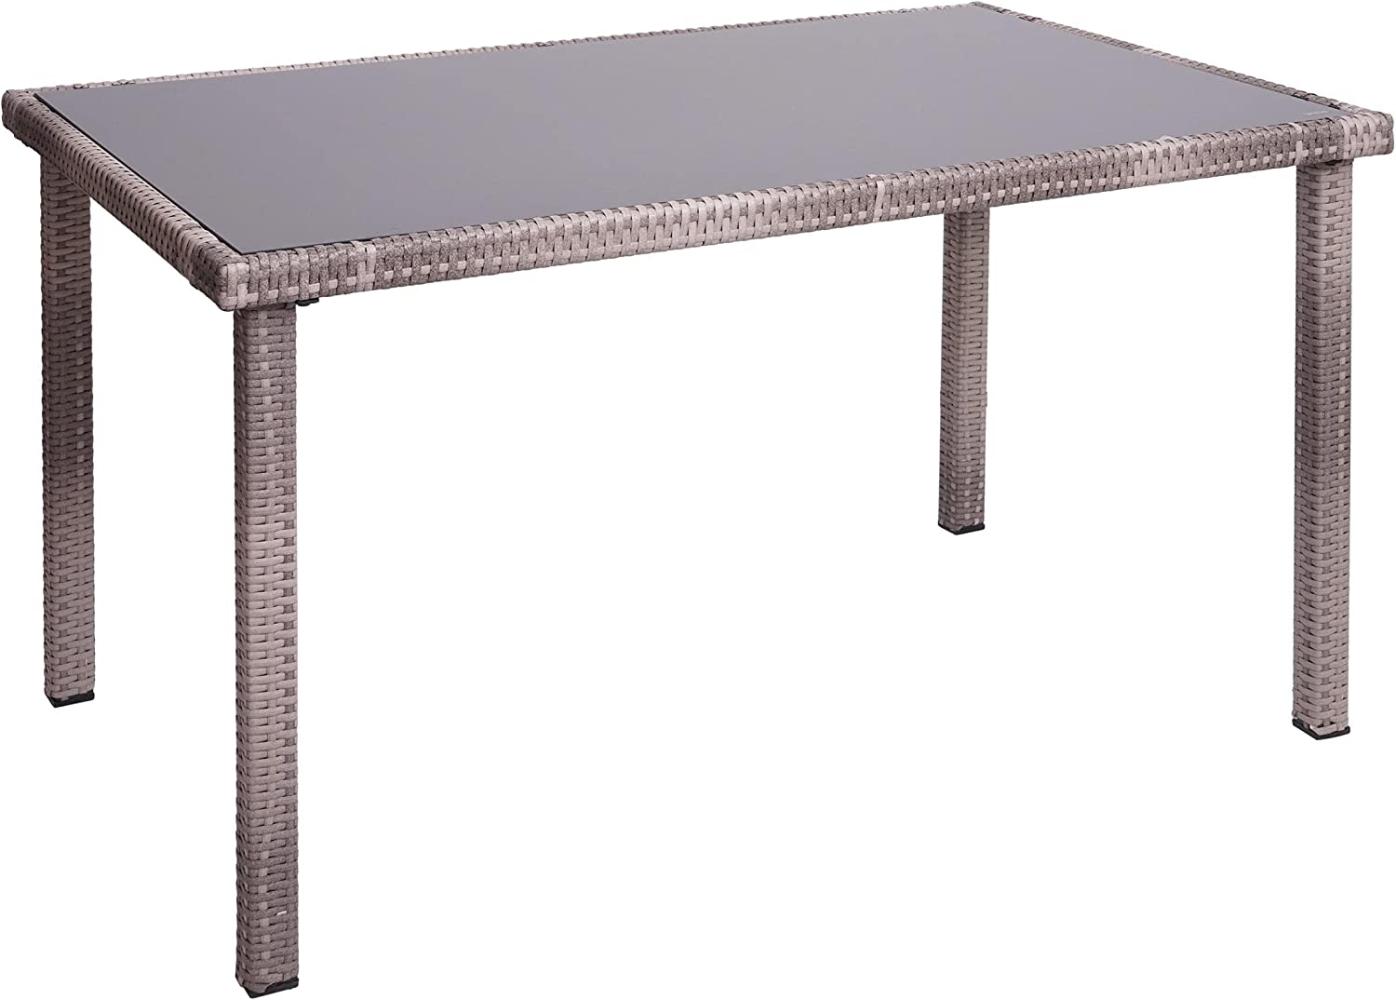 Poly-Rattan Tisch HWC-G19, Gartentisch Balkontisch, 120x75cm ~ grau-braun Bild 1